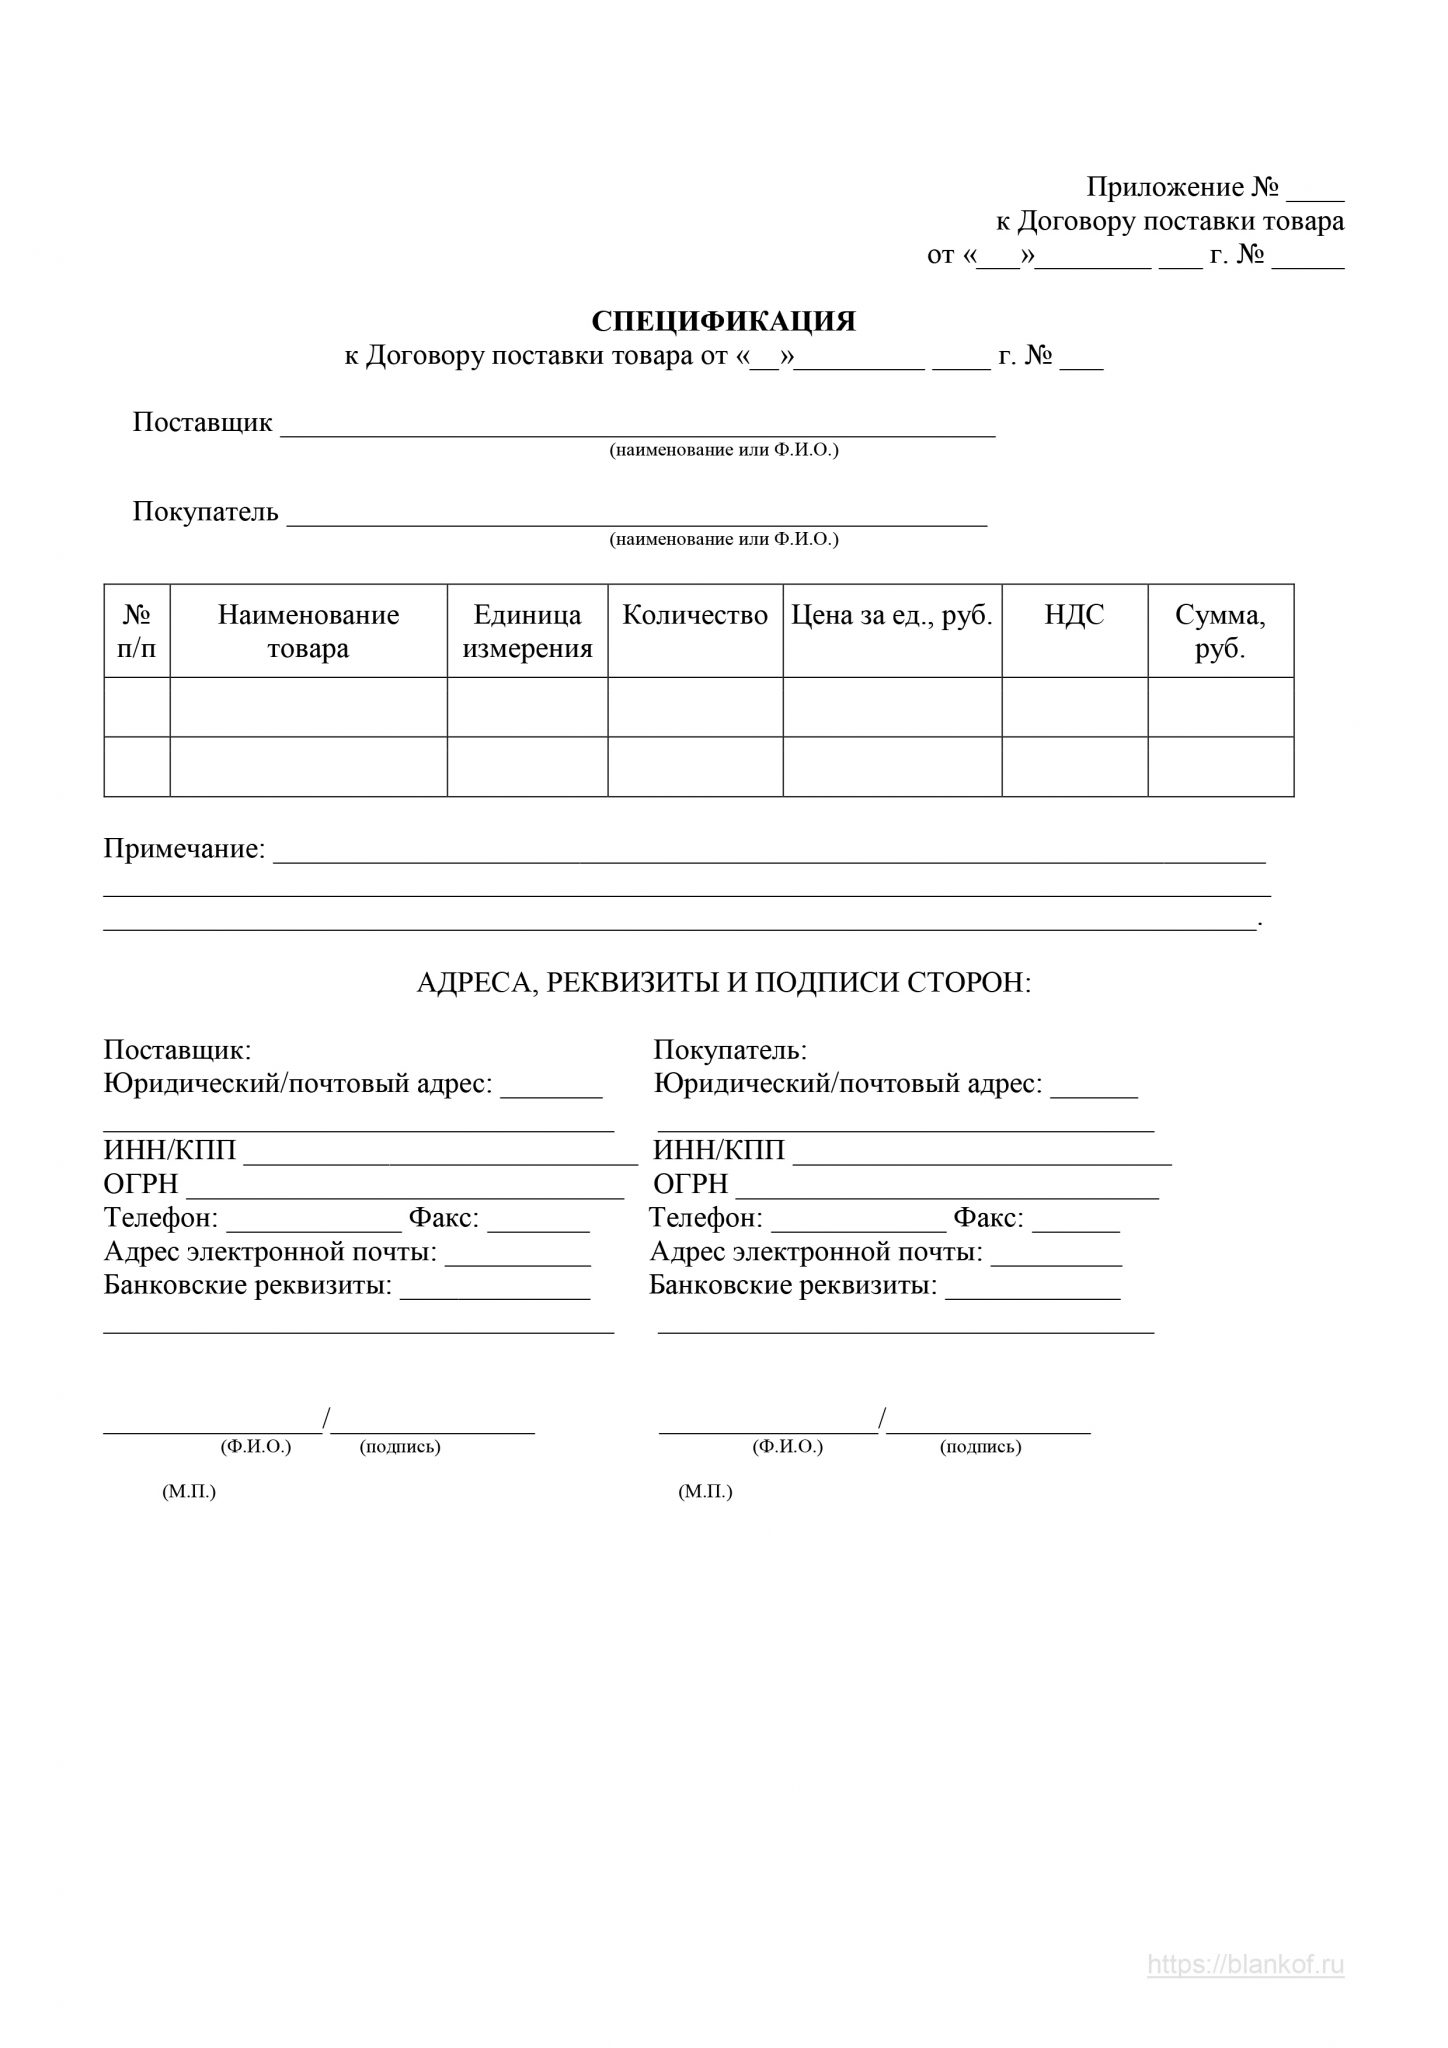 Спецификация на поставку товара образец приложение 1 к договору